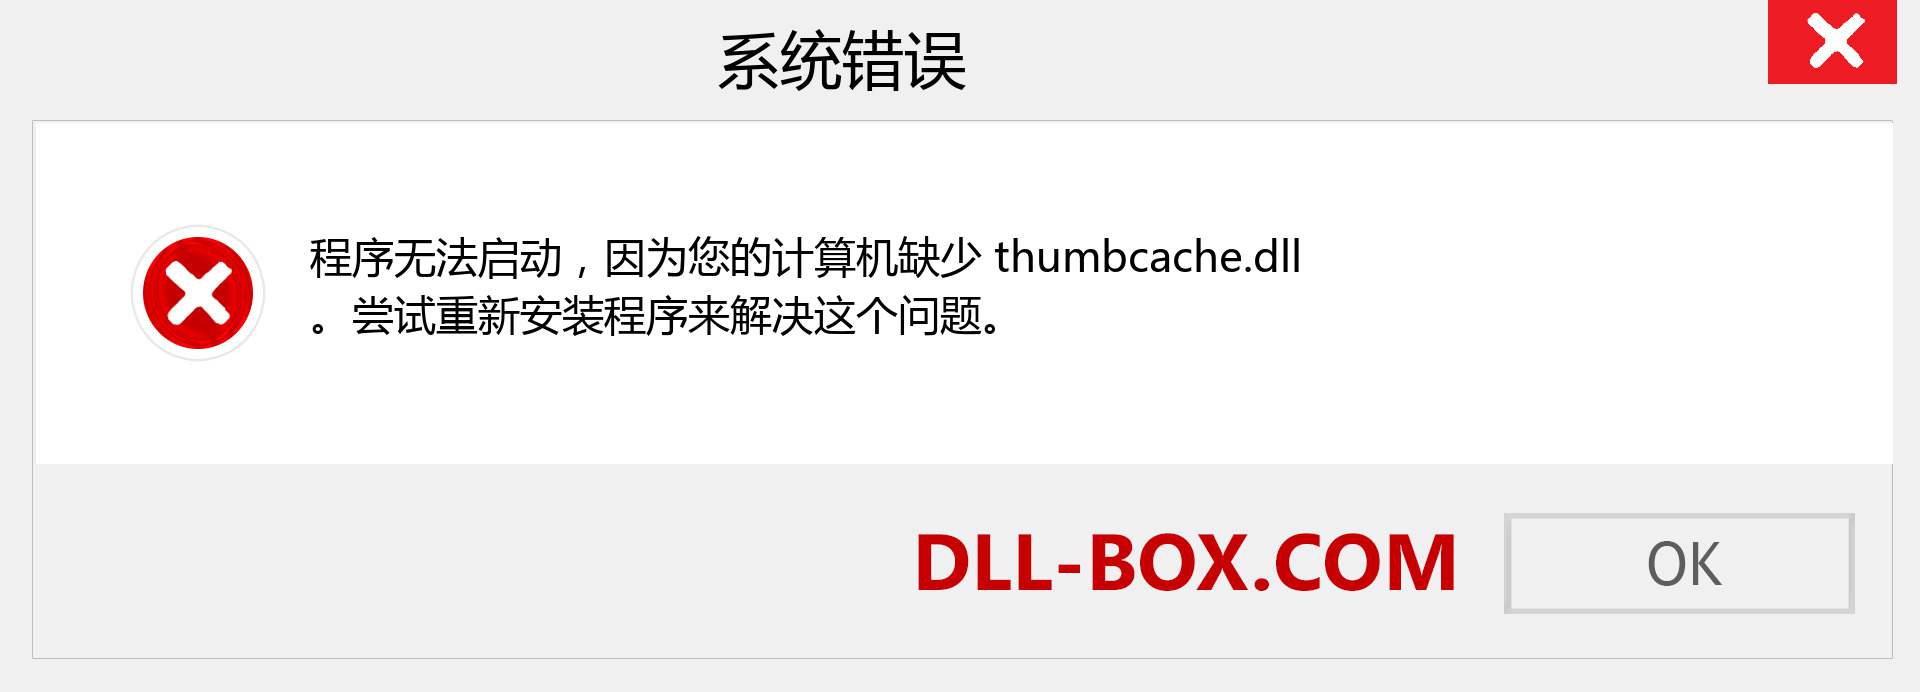 thumbcache.dll 文件丢失？。 适用于 Windows 7、8、10 的下载 - 修复 Windows、照片、图像上的 thumbcache dll 丢失错误